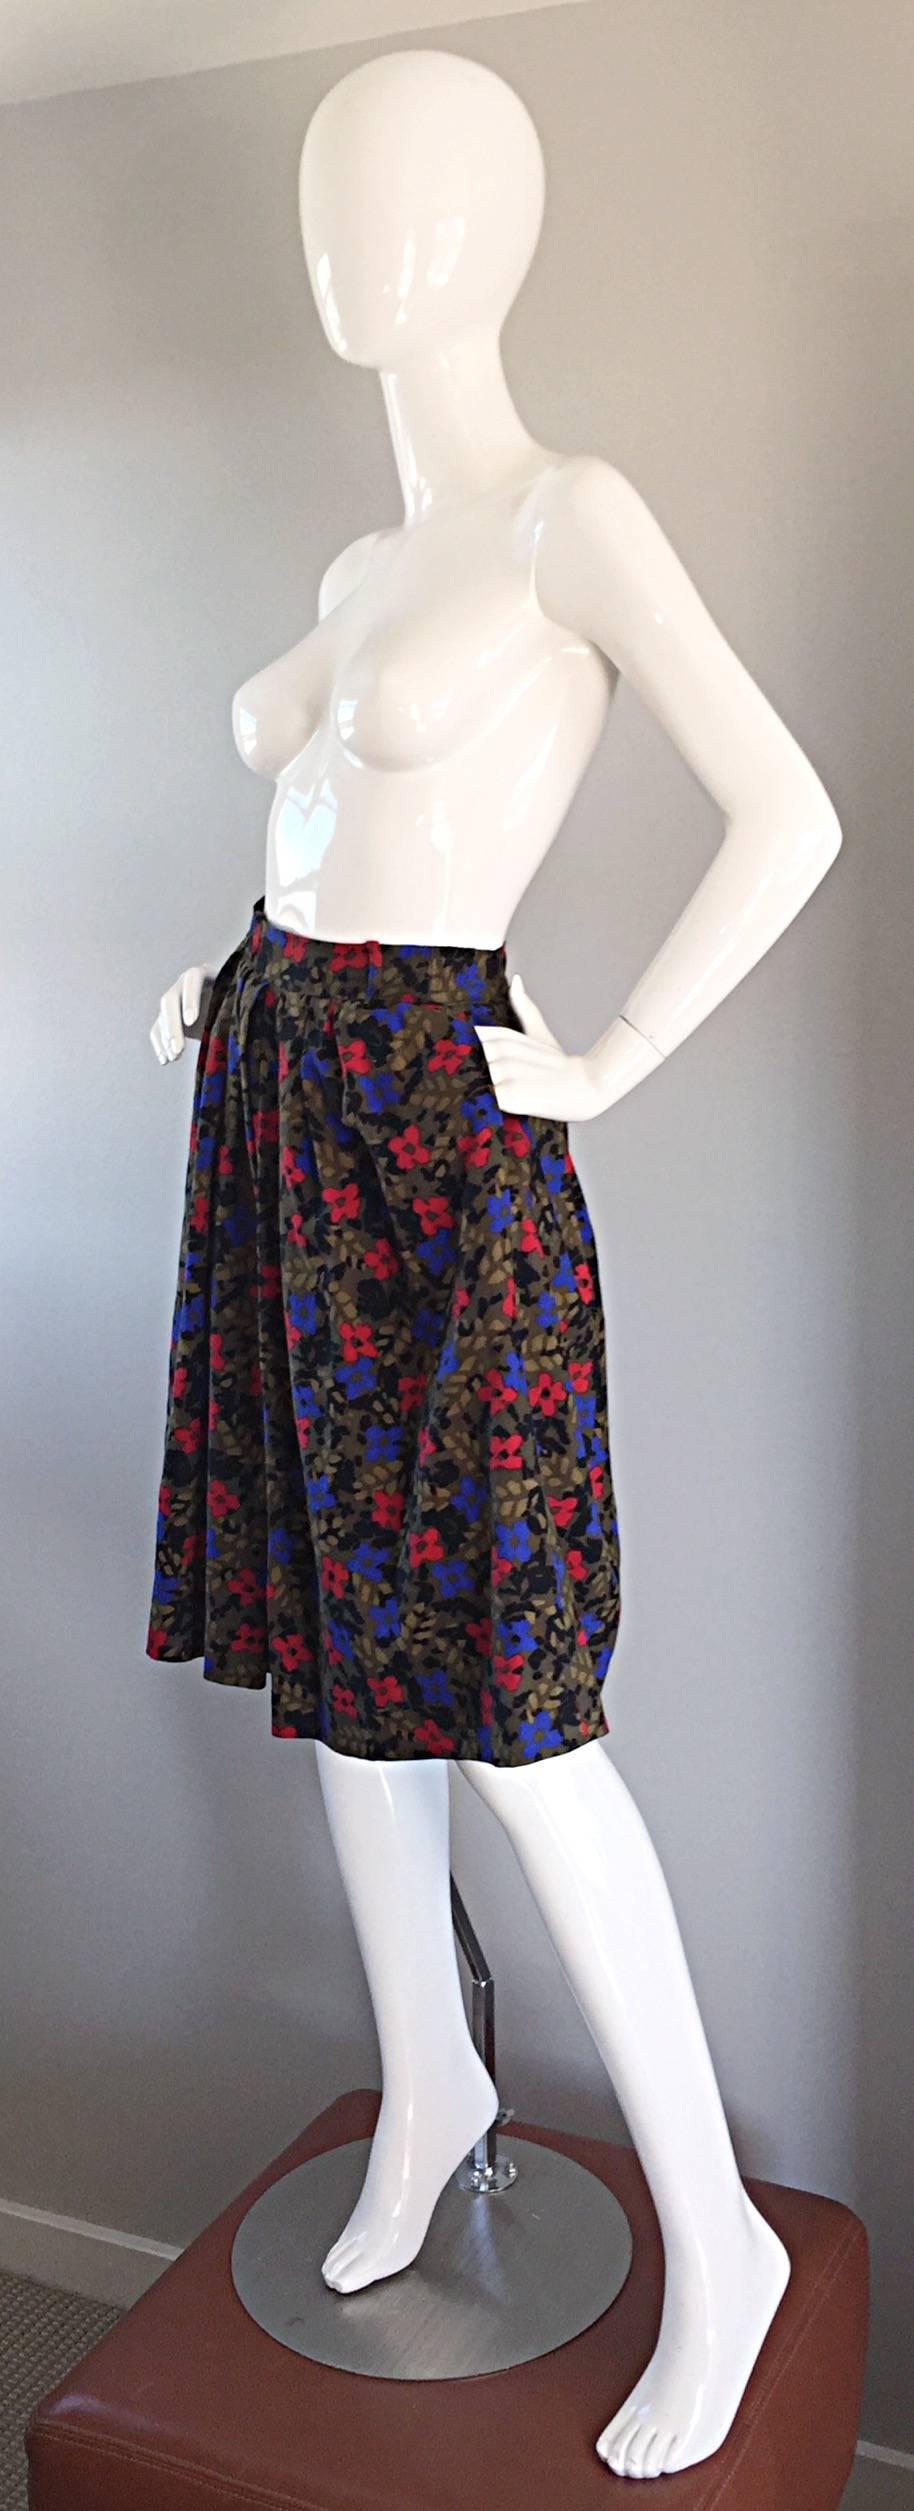 skirt made of flowers